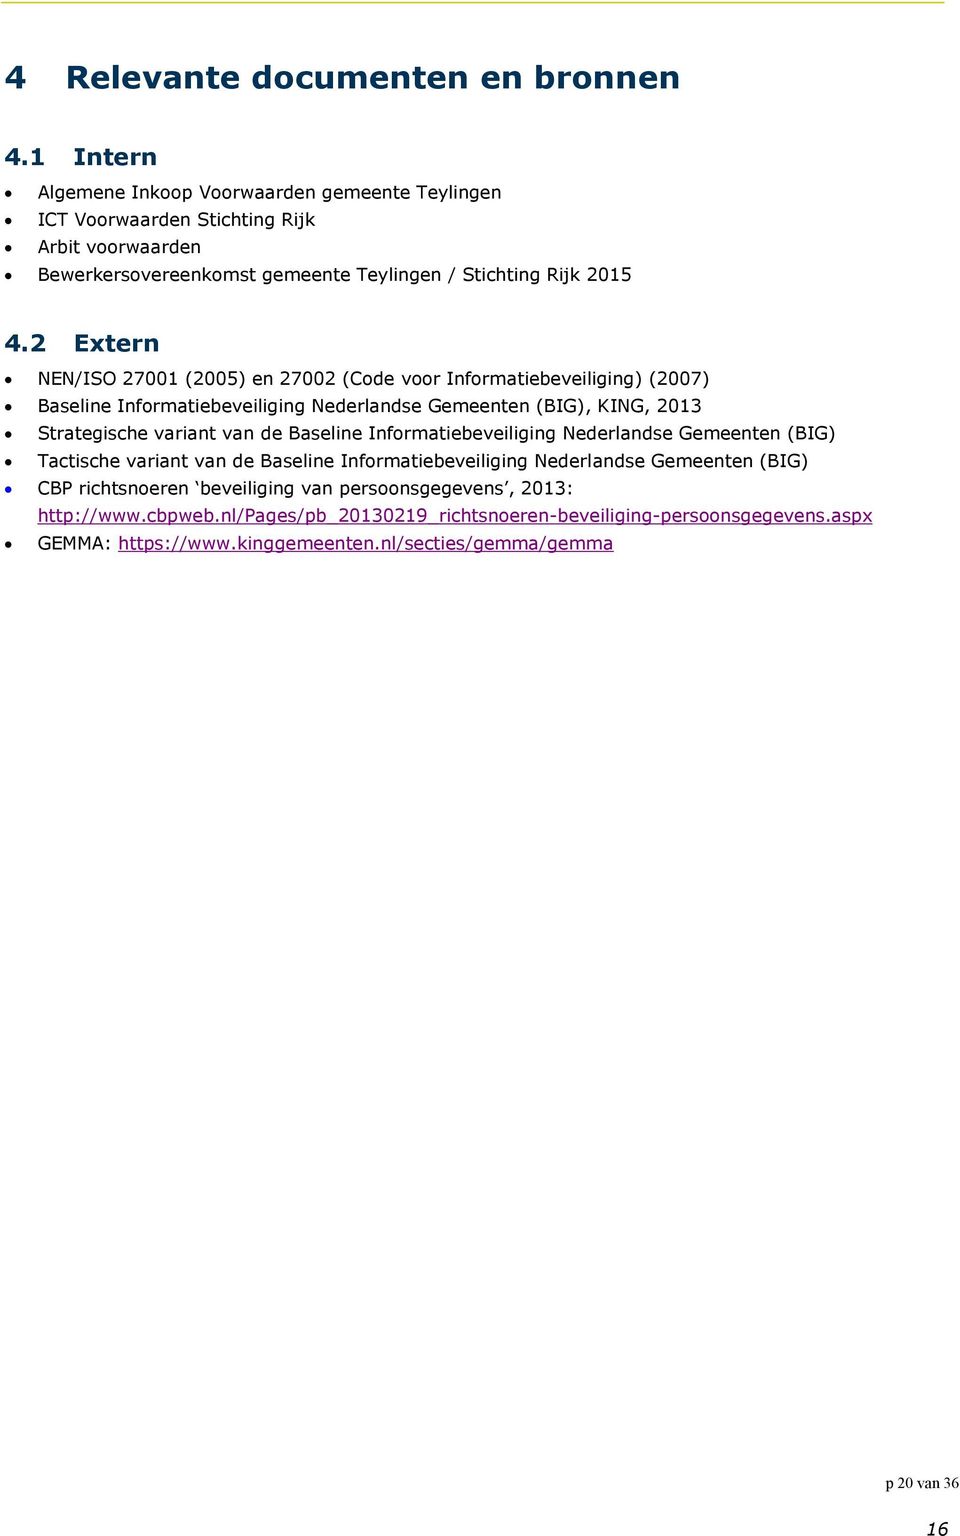 2 Extern NEN/ISO 27001 (2005) en 27002 (Code voor Informatiebeveiliging) (2007) Baseline Informatiebeveiliging Nederlandse Gemeenten (BIG), KING, 2013 Strategische variant van de